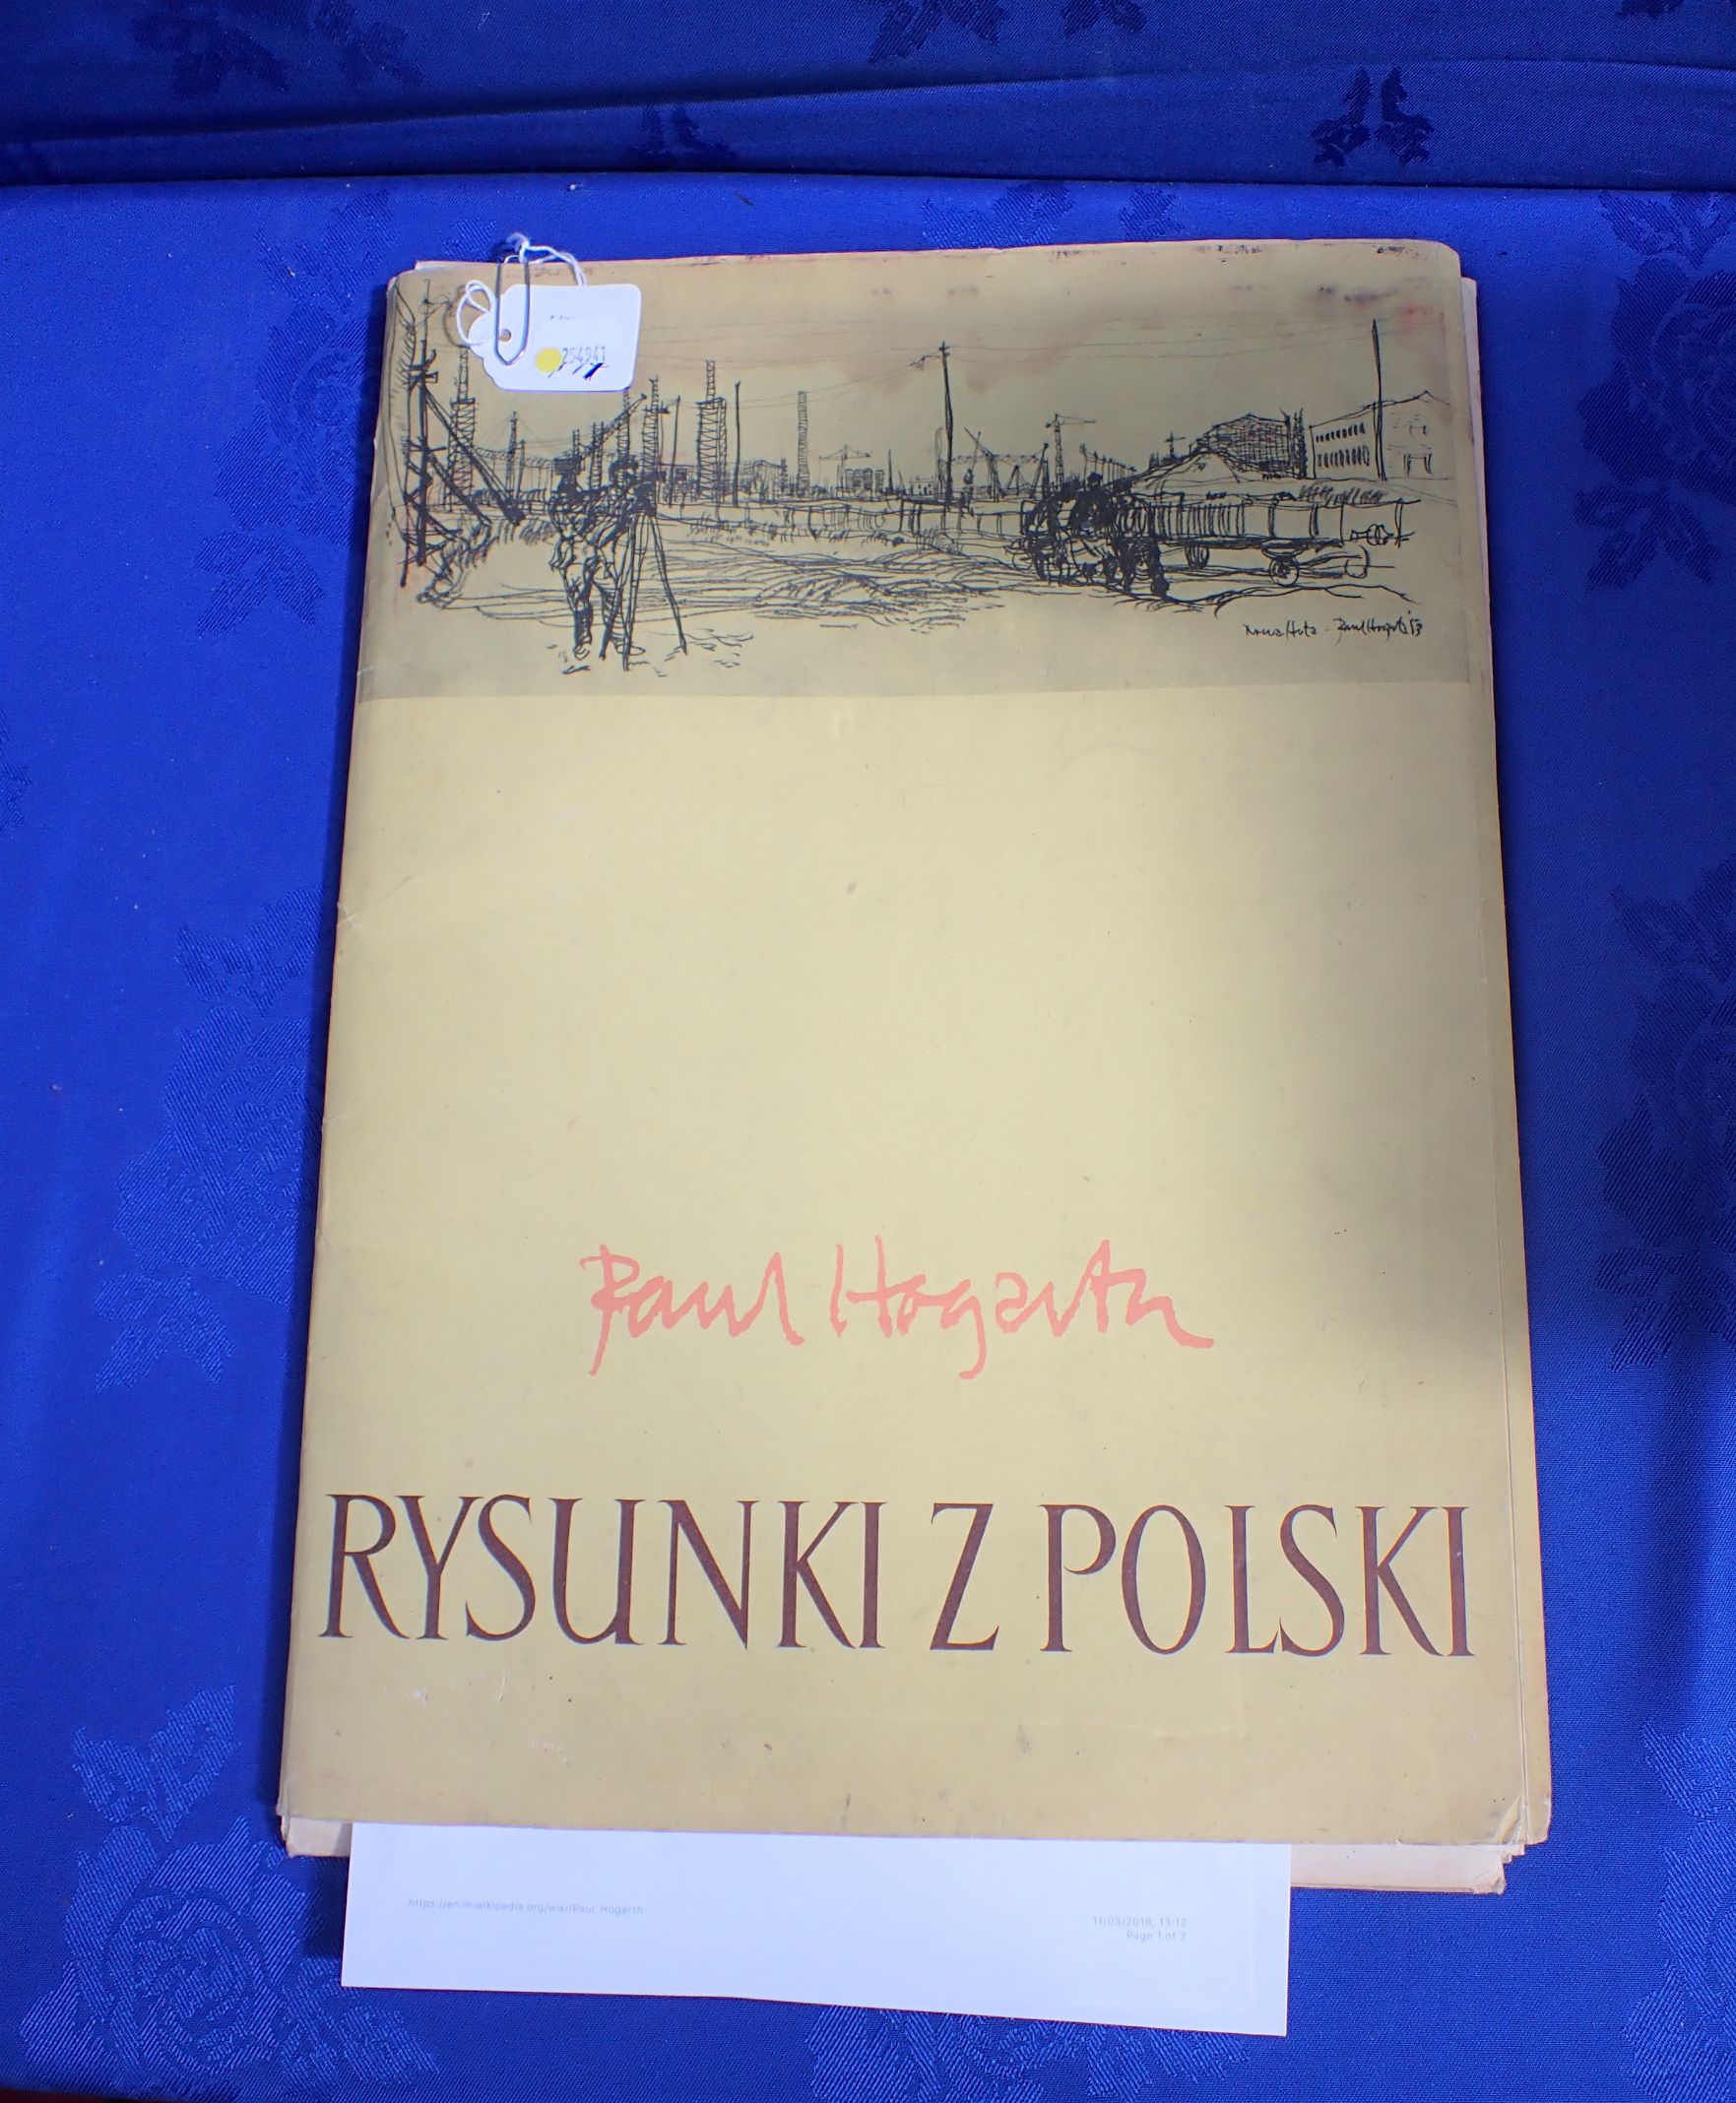 PAUL HOGARTH, 1917-2001: 'RYZUNKI Z POLSKI'